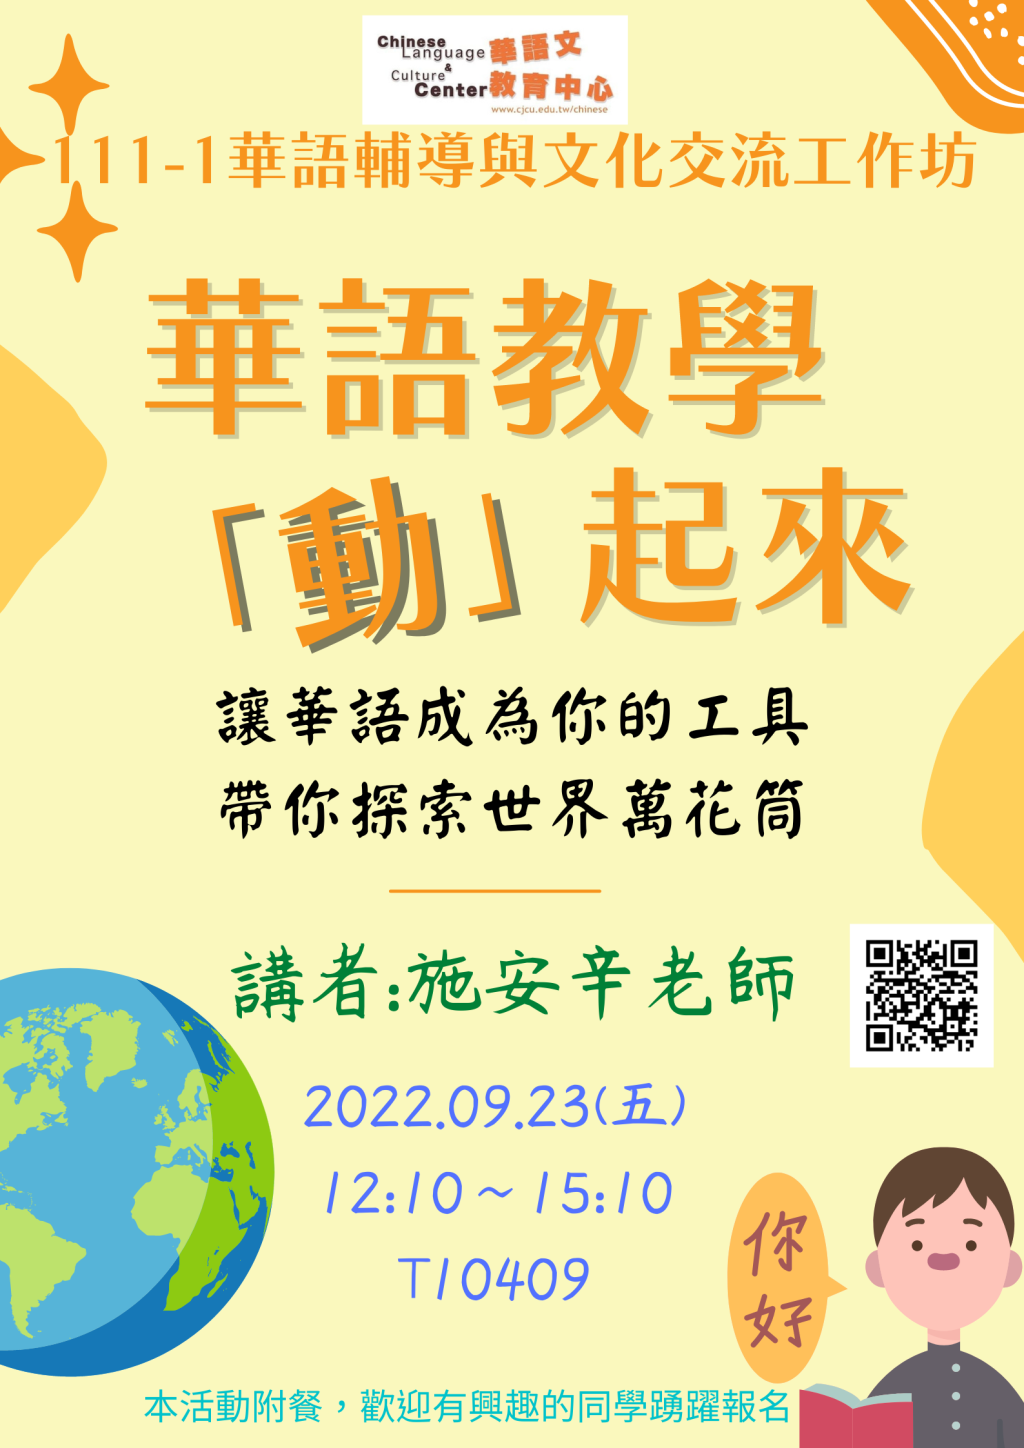 111-1華語輔導與文化交流工作坊:華語教學「動」起來